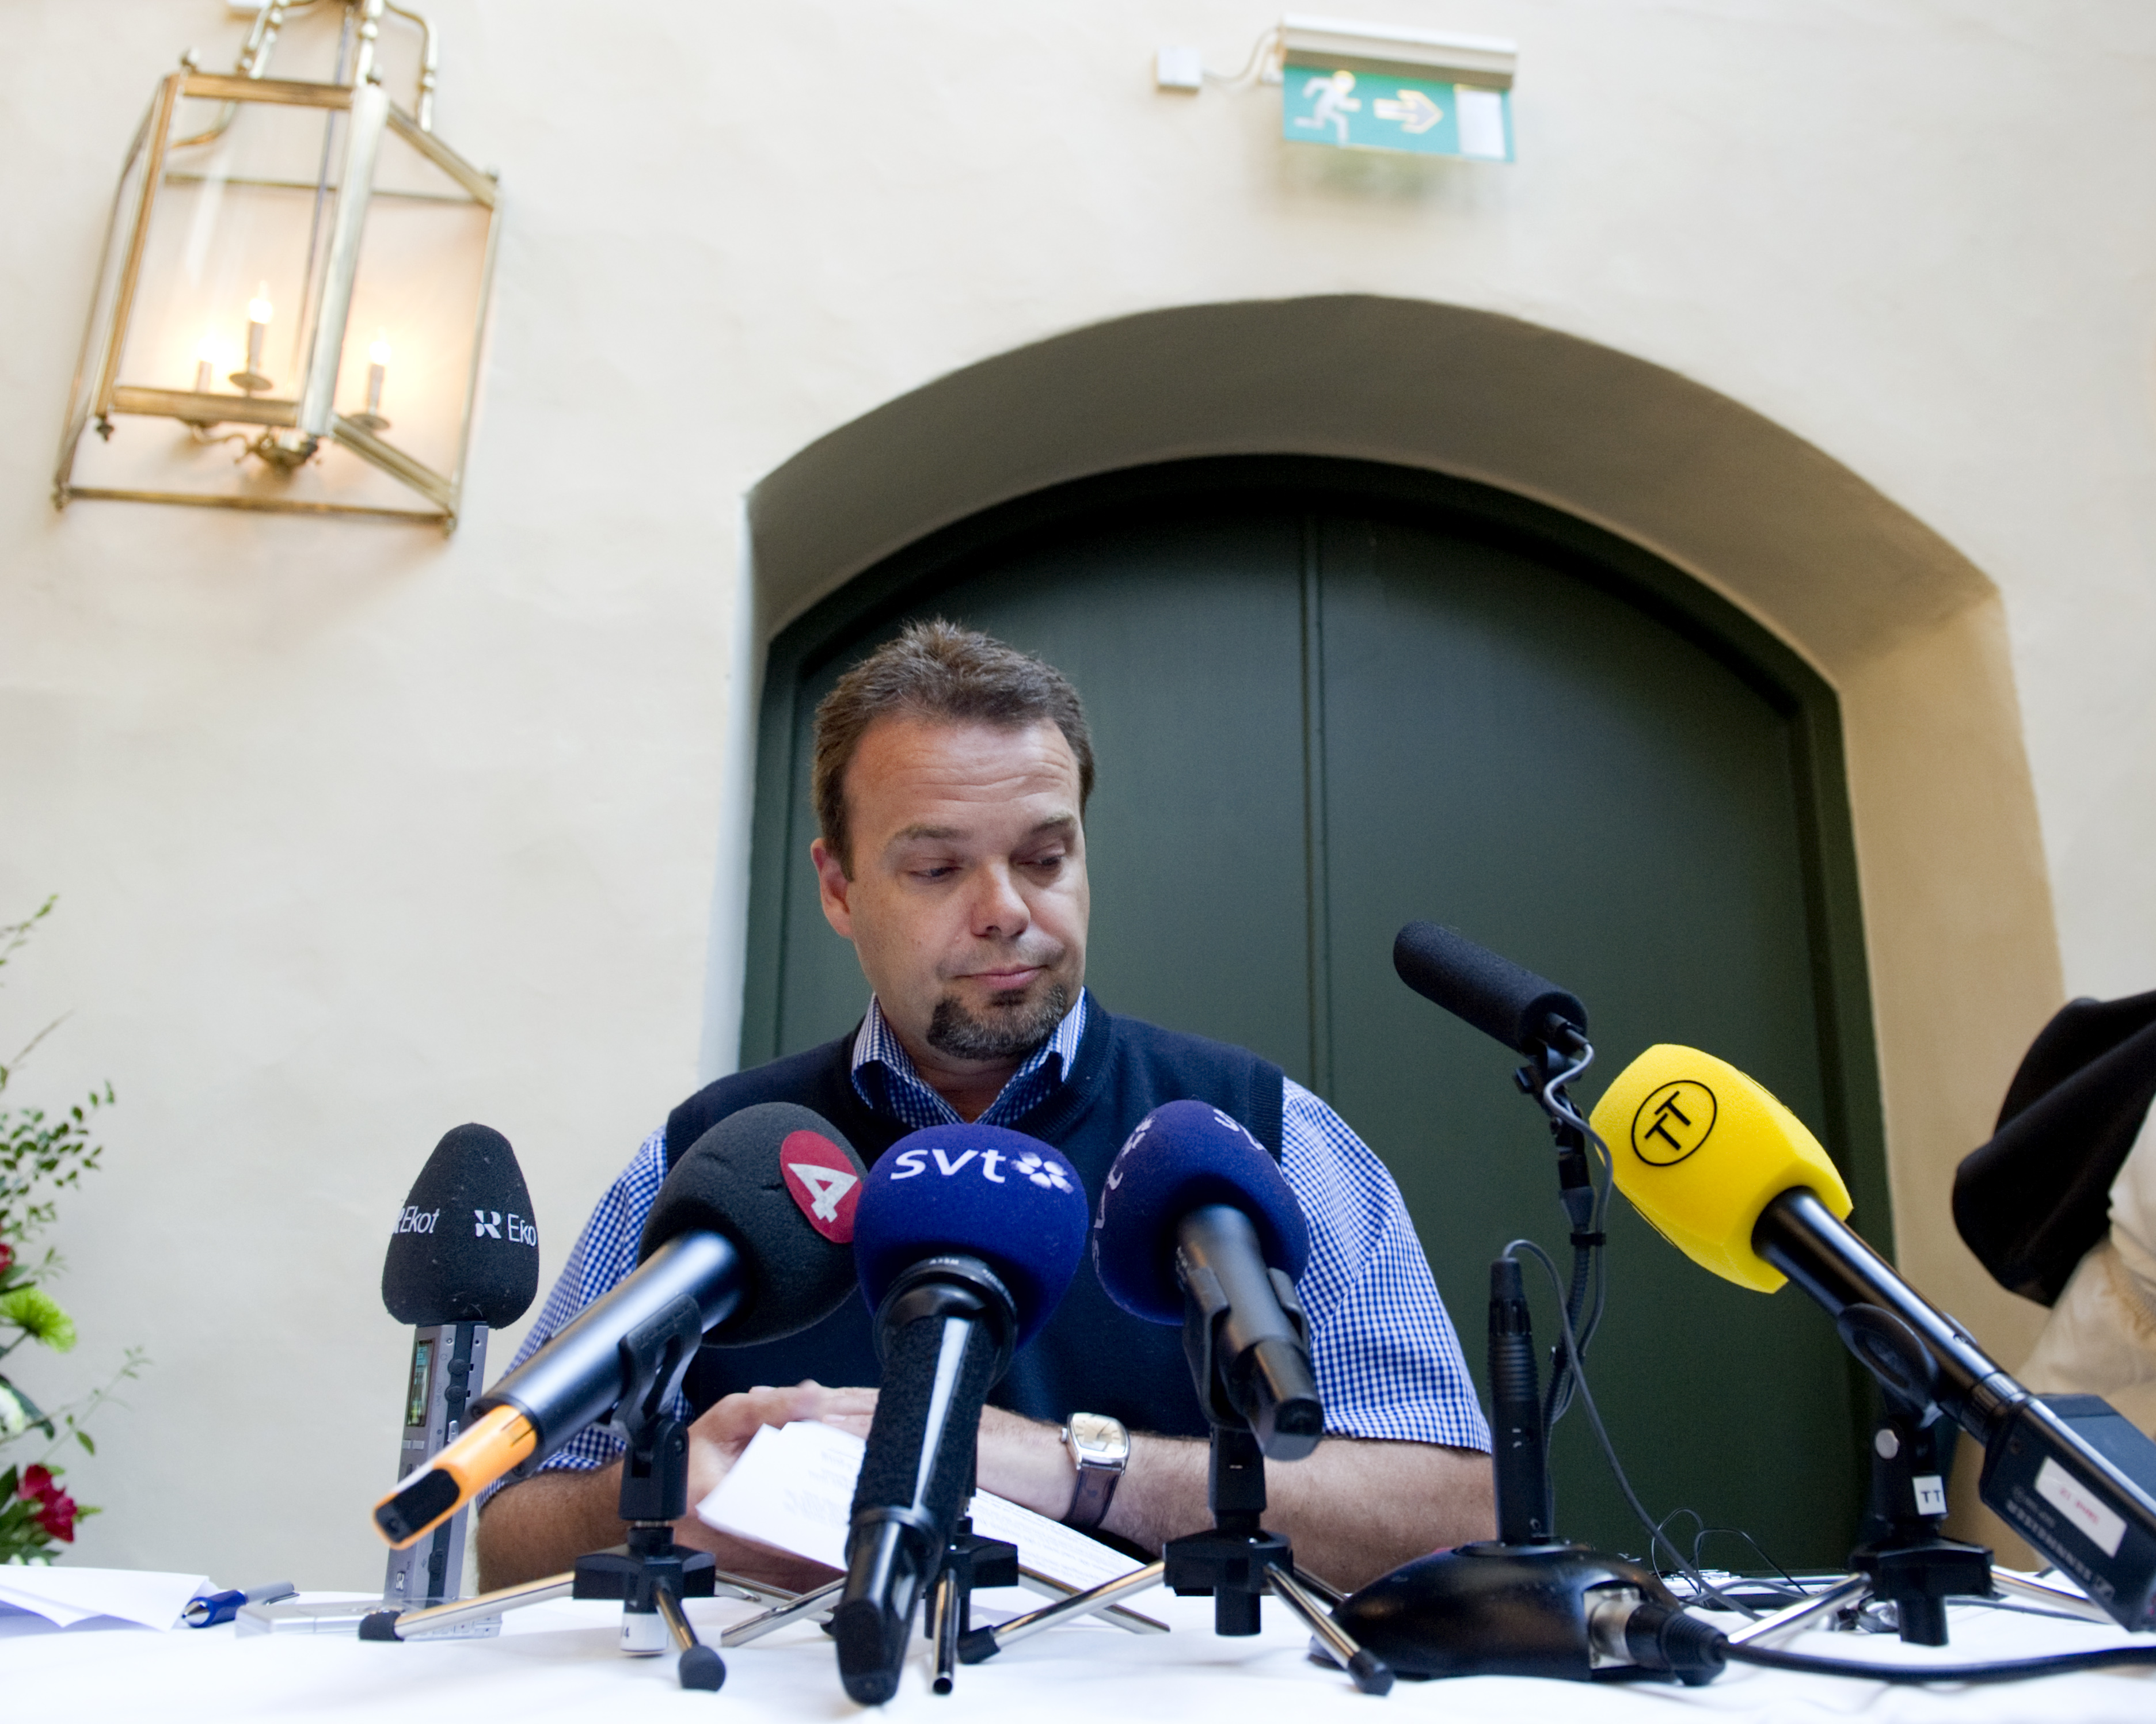 Via sin advokat tillbakavisar Sven Otto Littorin Aftonbladets påstående om att han köpt sex. 